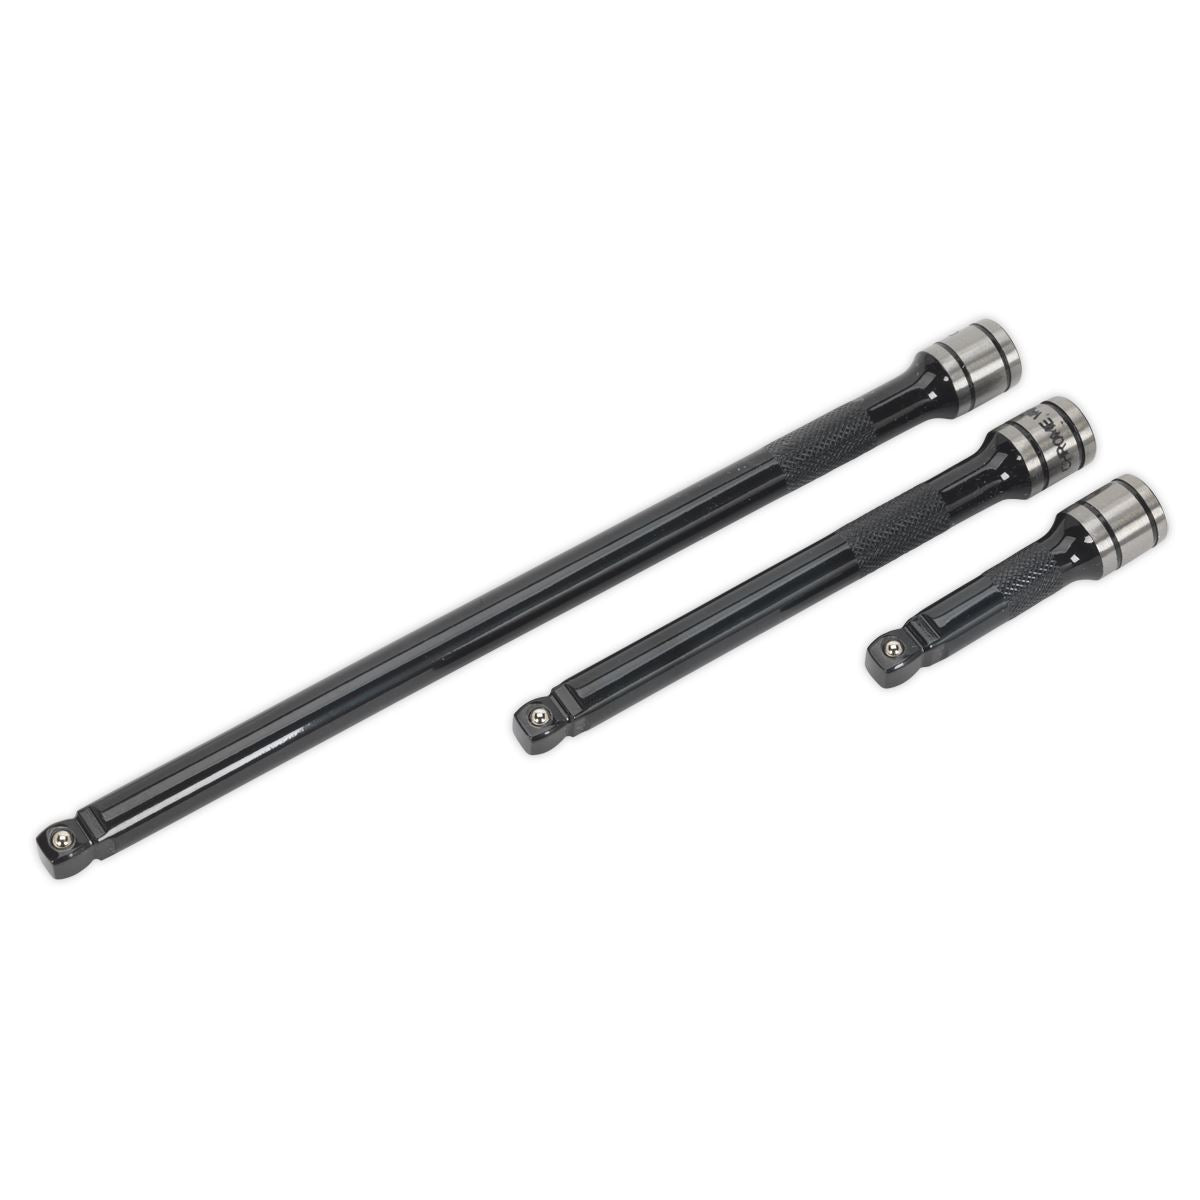 Sealey Premier Black 3 Piece 3/8" Drive Wobble Rigid Extension Bar Set Sockets